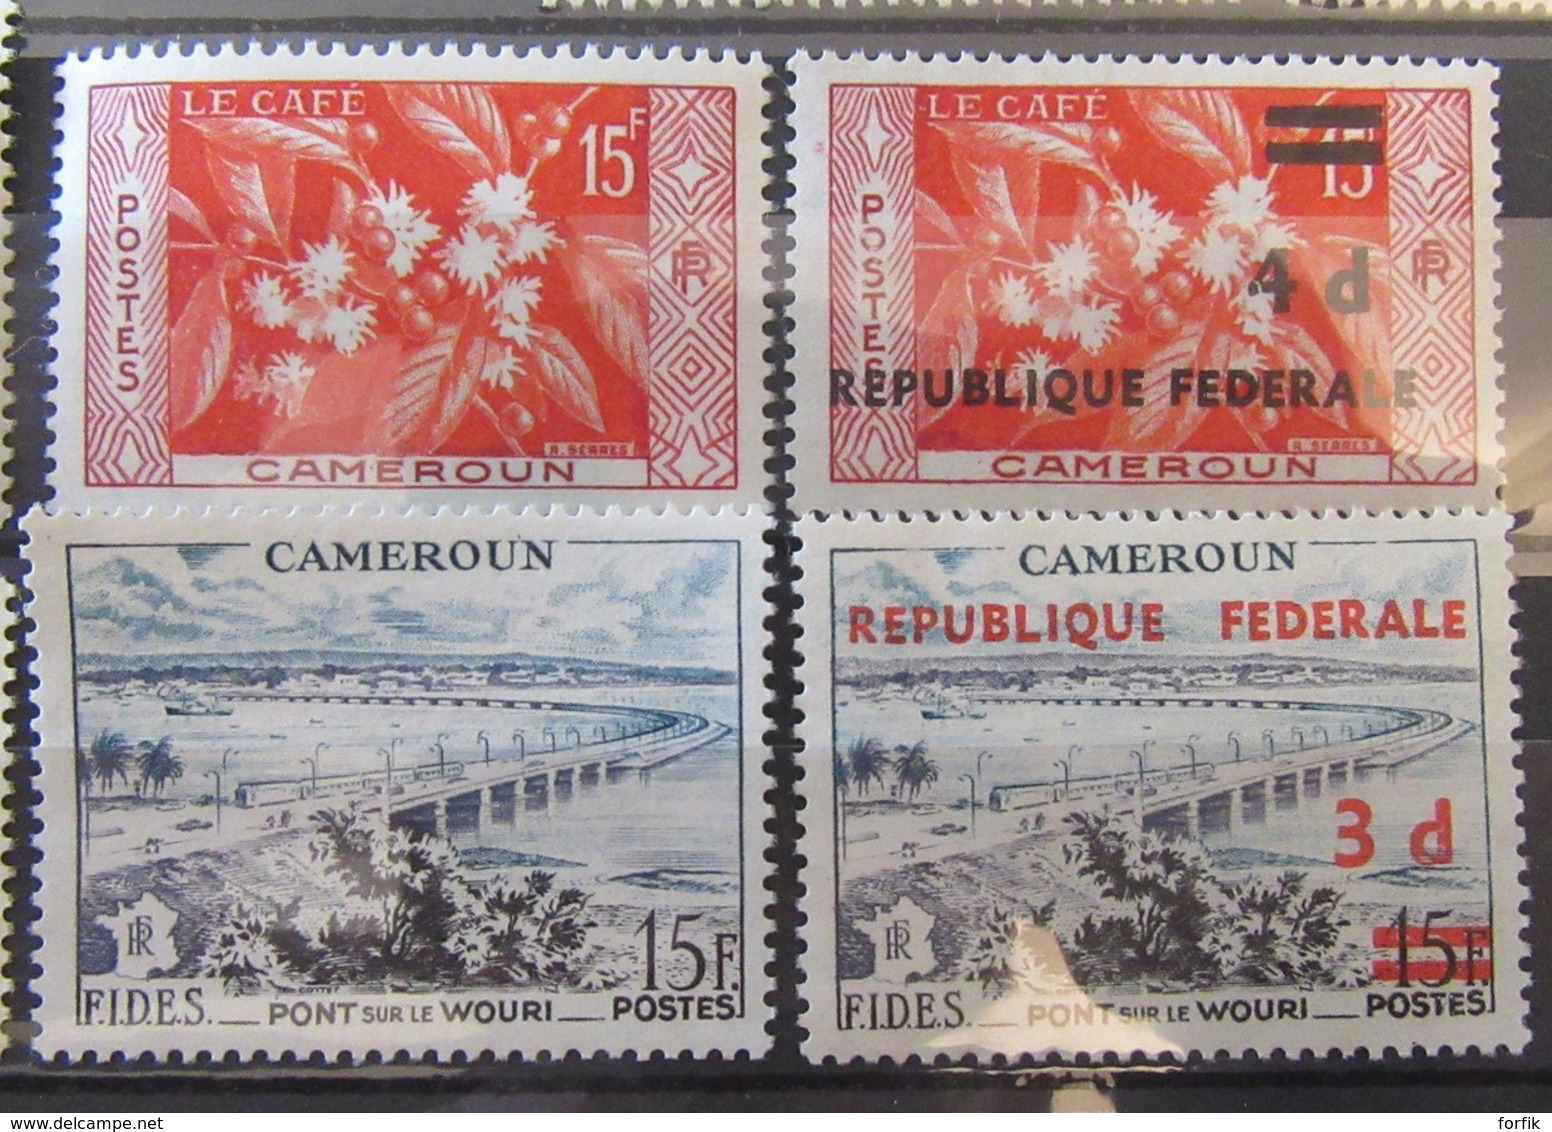 Cameroun - Collection de timbres neufs 1925 à Fin années 1960 dont taxe et Poste aérienne, séries, libération - TB